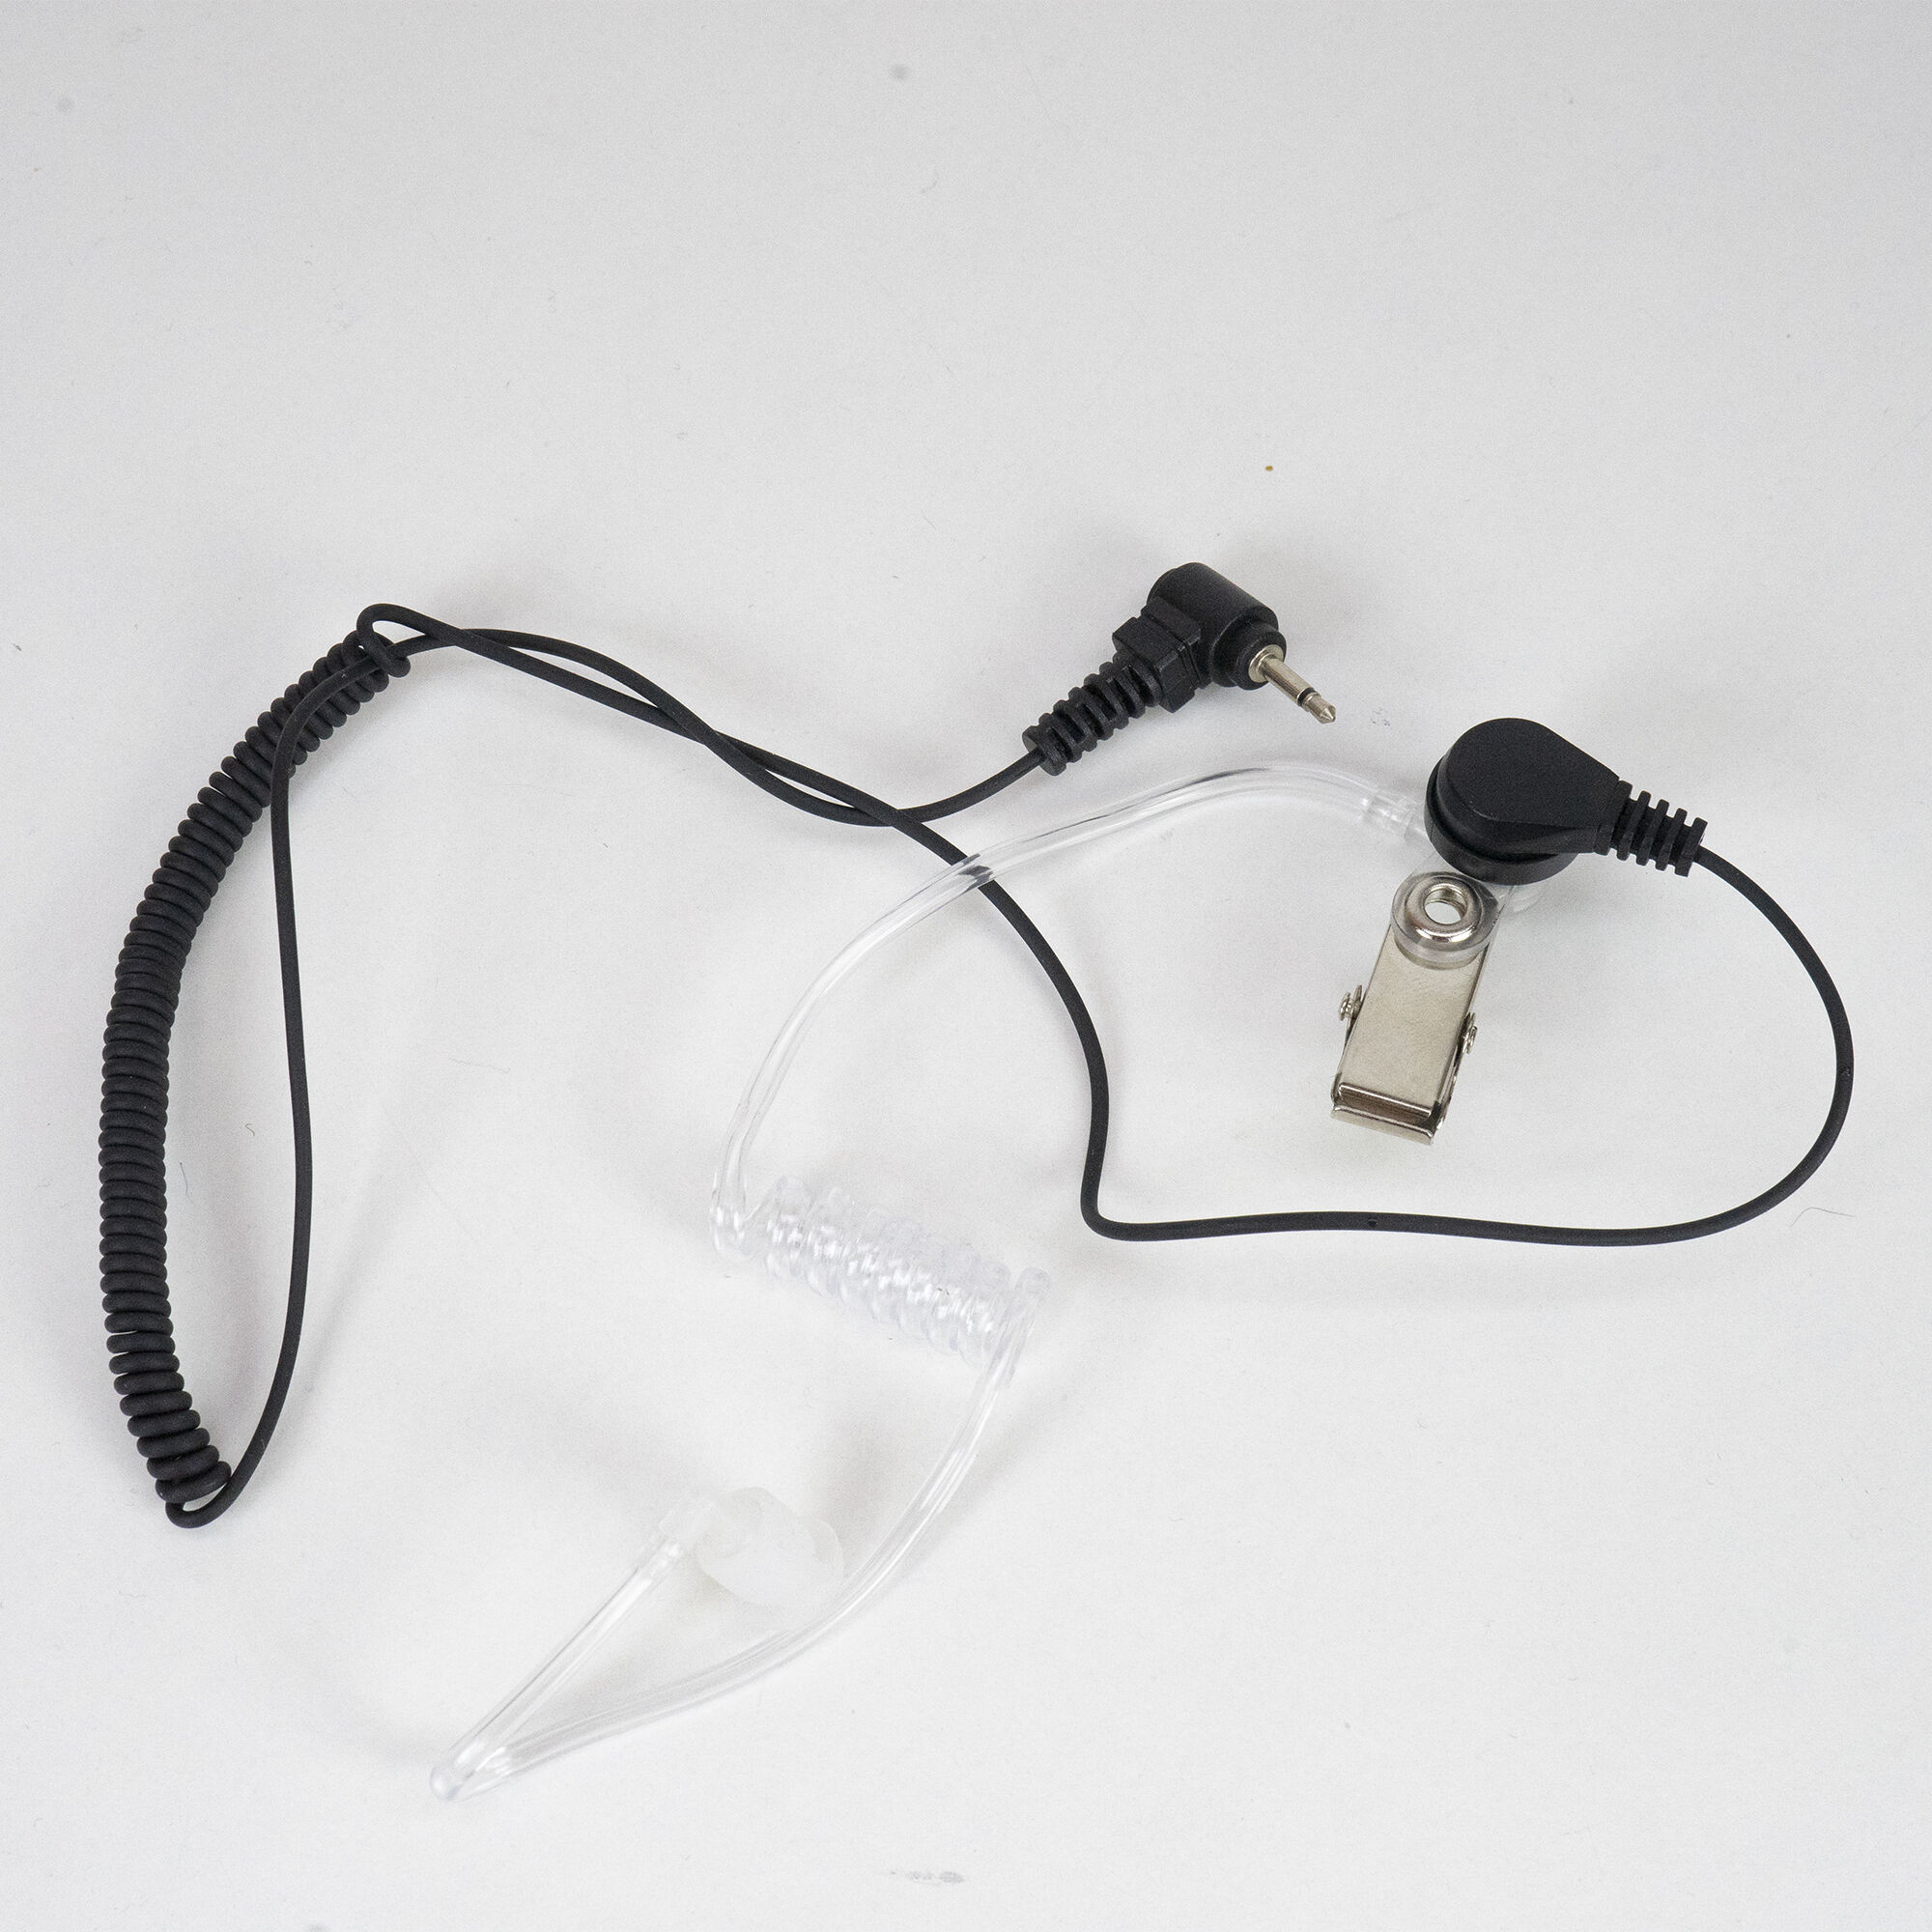 PNI HF11 Kopfhörer mit 1 Pin 2,5 mm, Akustikrohr, für fast alle Funkgeräte  - Bild 2